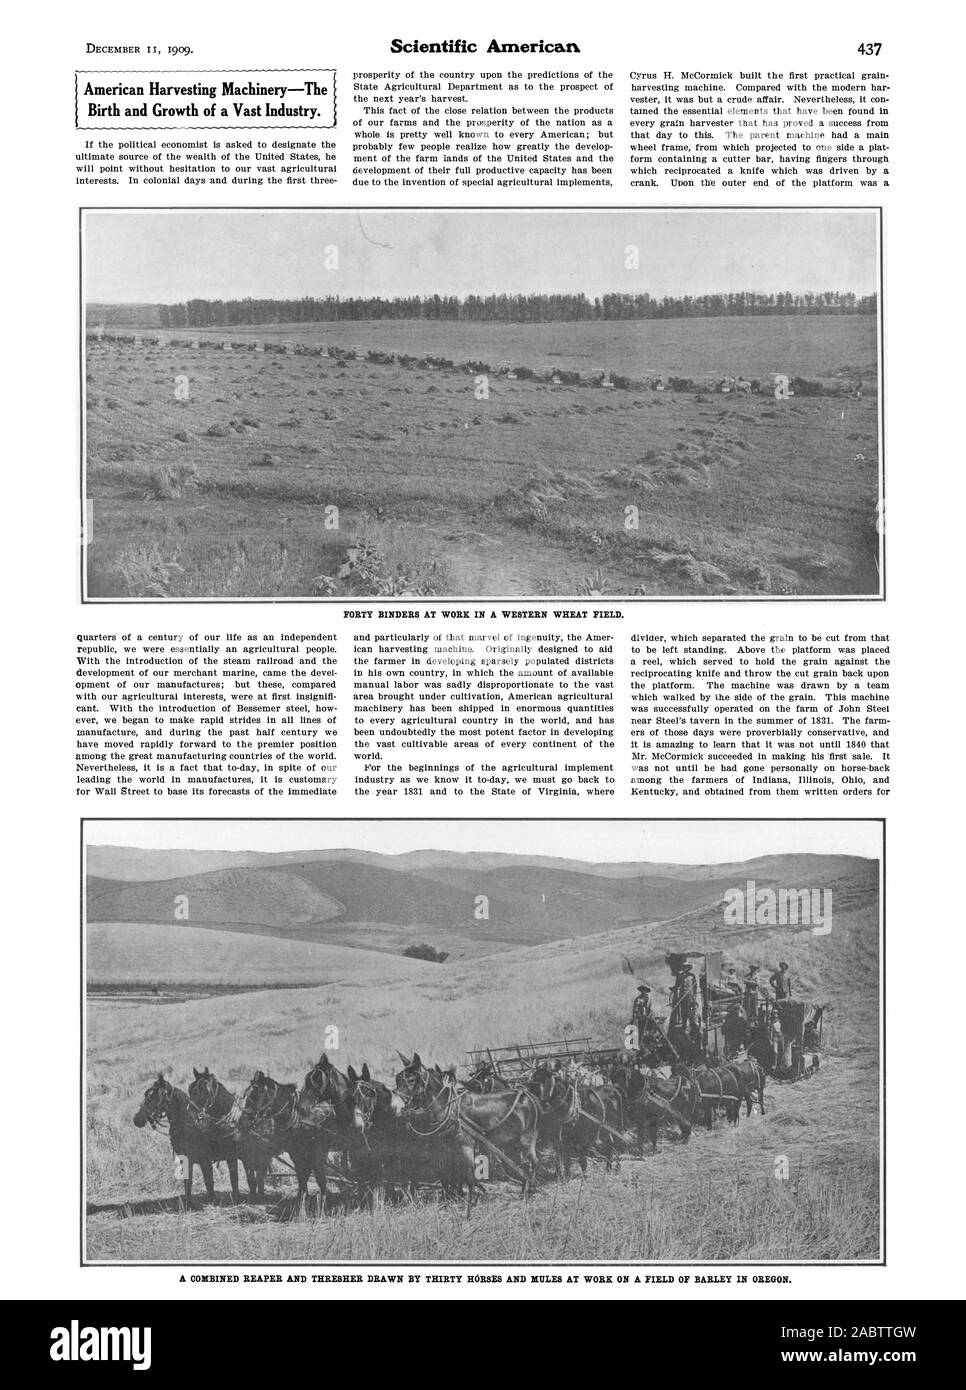 Eine kombinierte Mähbinder und dreschmaschine von 30 Pferde und Maultiere bei der Arbeit auf einem Feld von Gerste in Oregon gezogen. Scientific American, 1909-12-11 Stockfoto